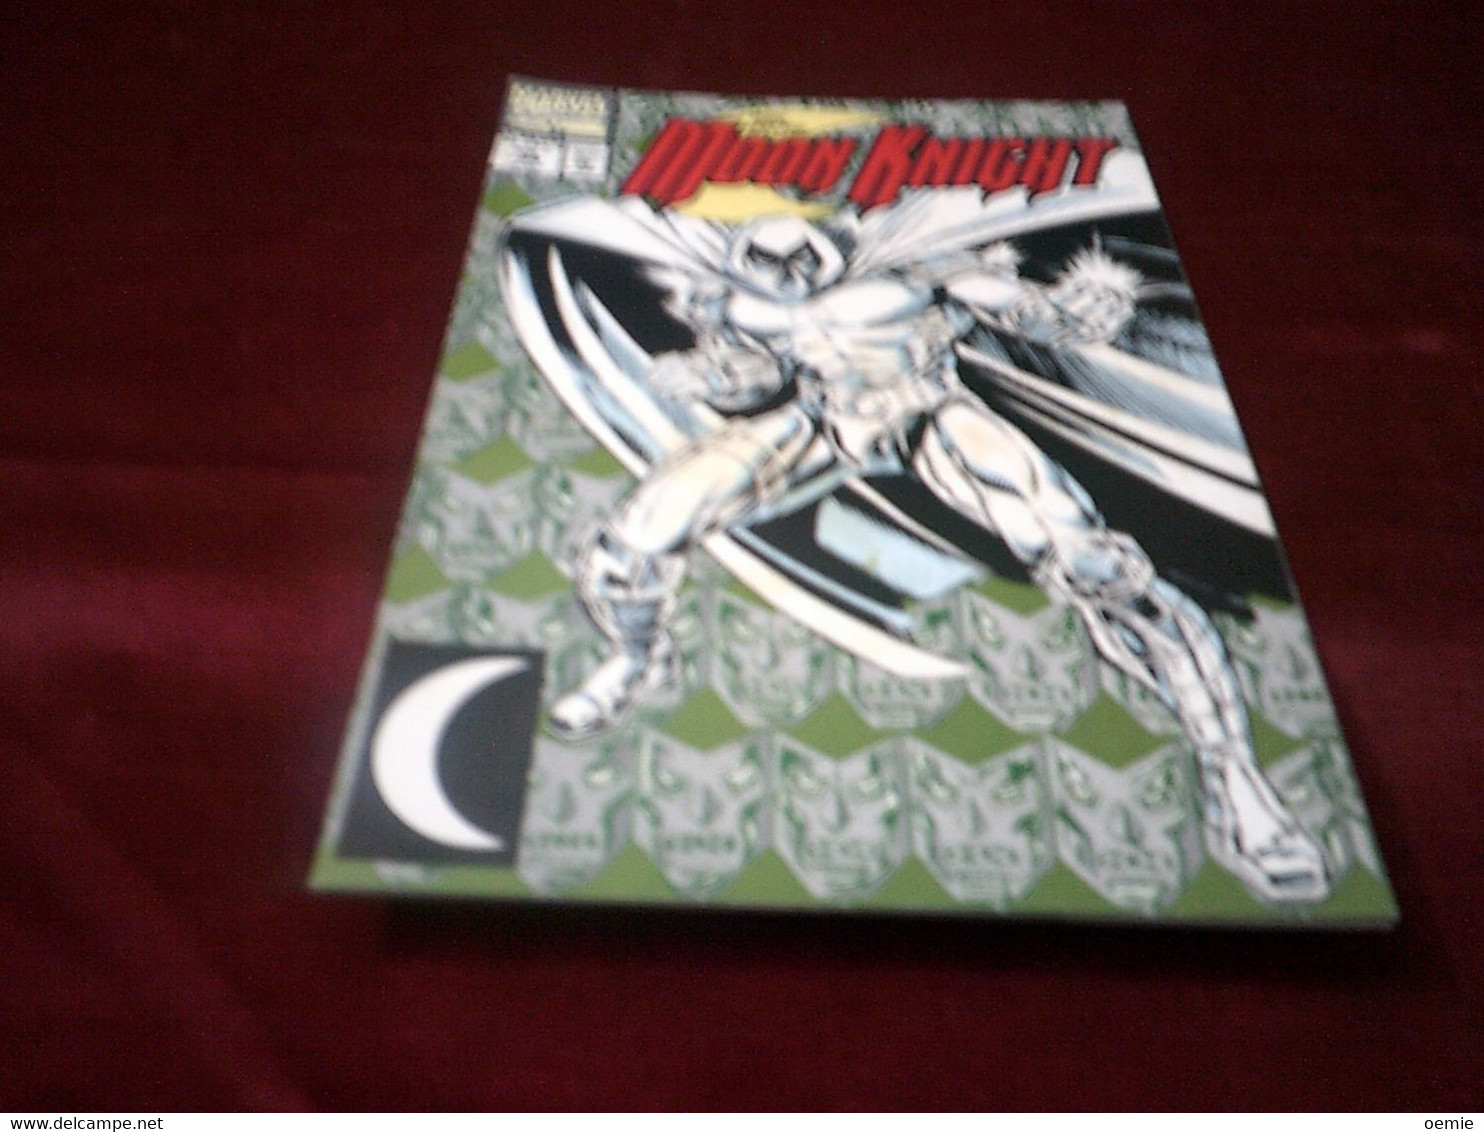 MOON KNIGHT   N° 38  JUNE  1992 - Marvel